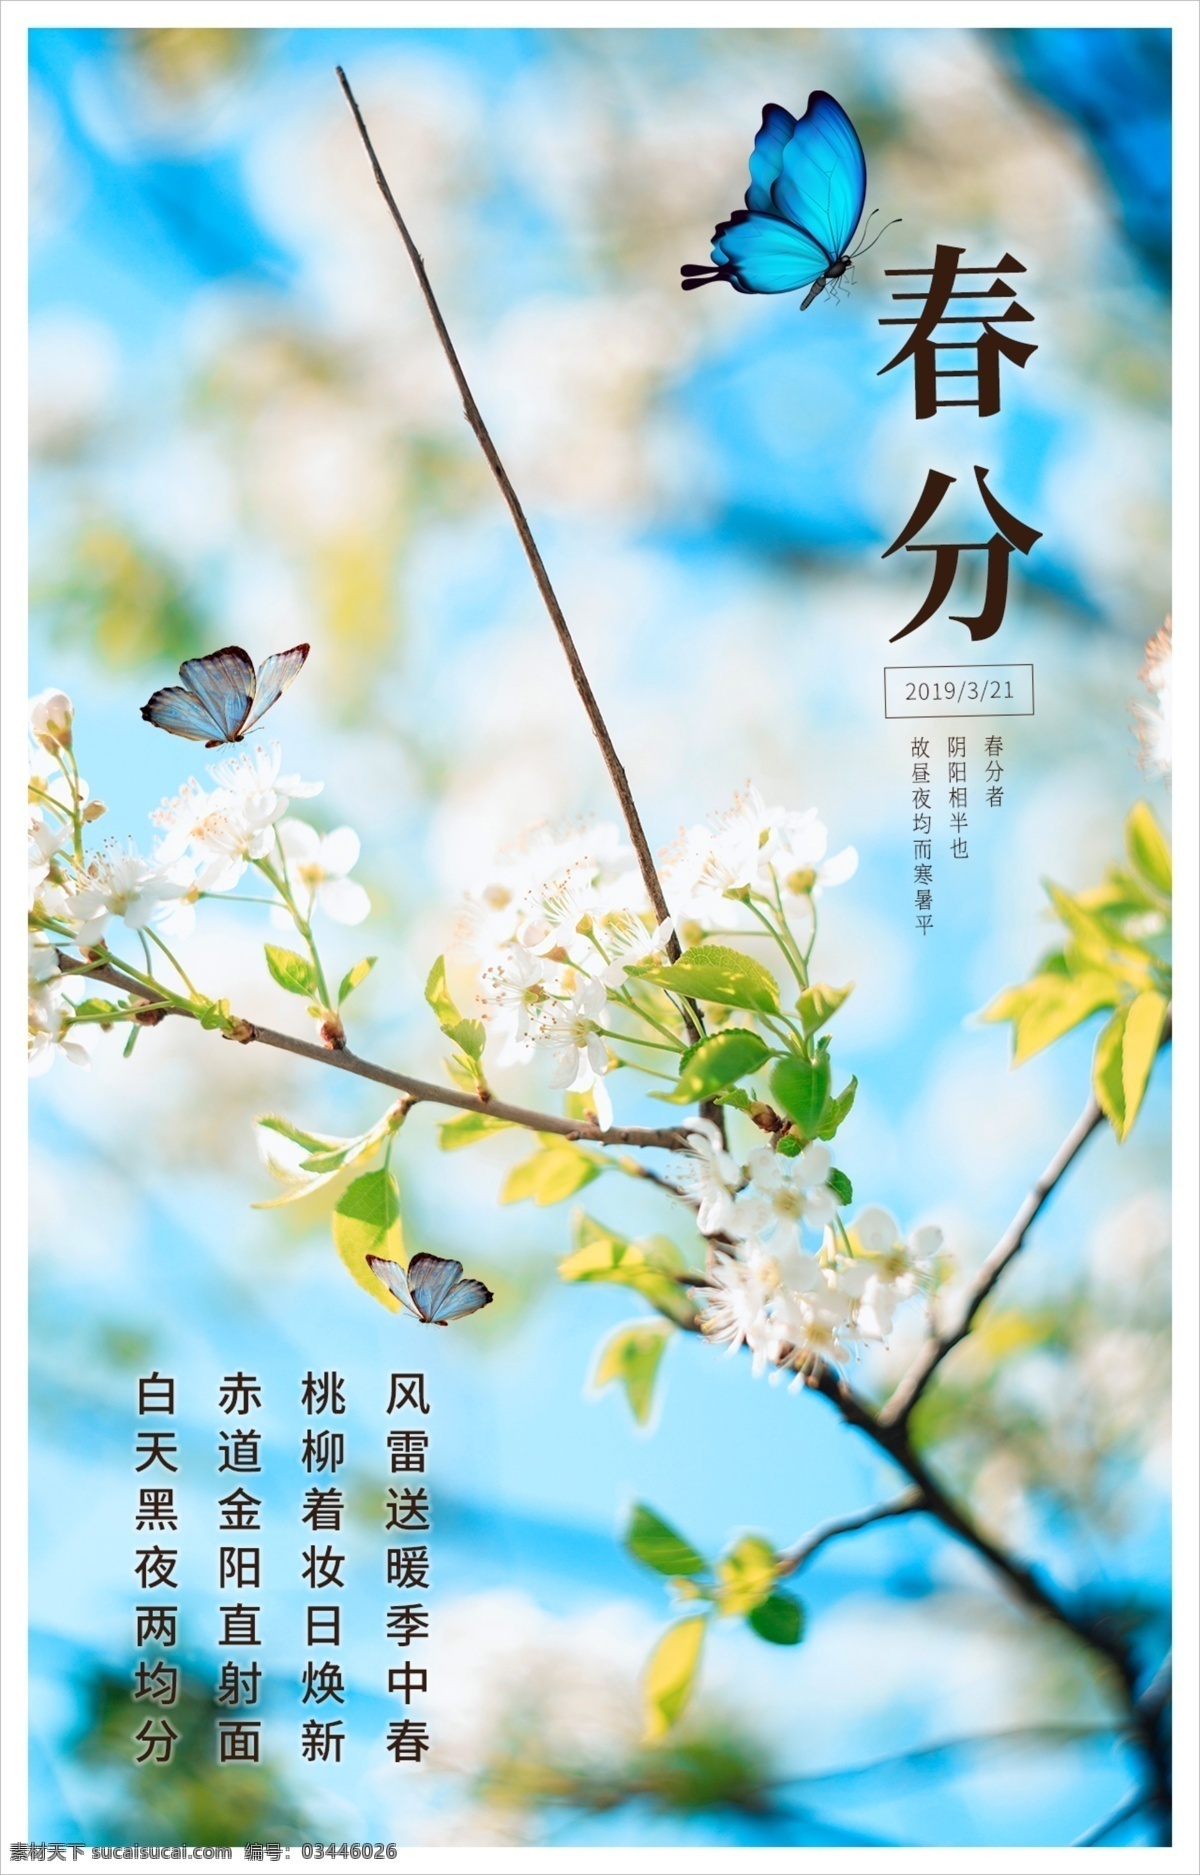 中国 传统 二十四节气 之春 分 春分 节气 梨花 阳光 春天 蓝色 蝴蝶 传统节日 自然景观 自然风光